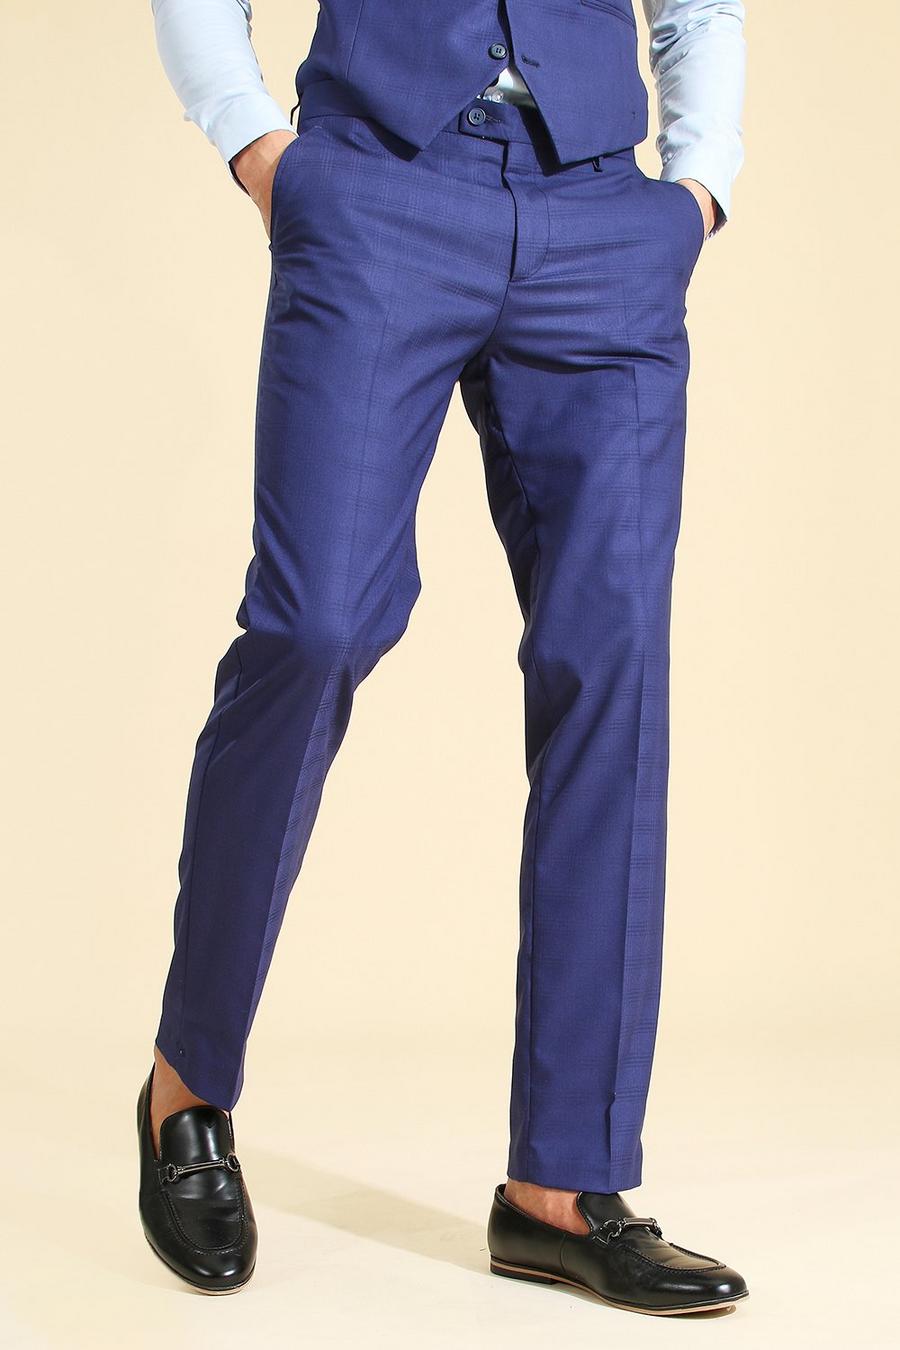 כחול azul מכנסיים לחליפה עם הדפס משבצות בגזרה צרה  image number 1